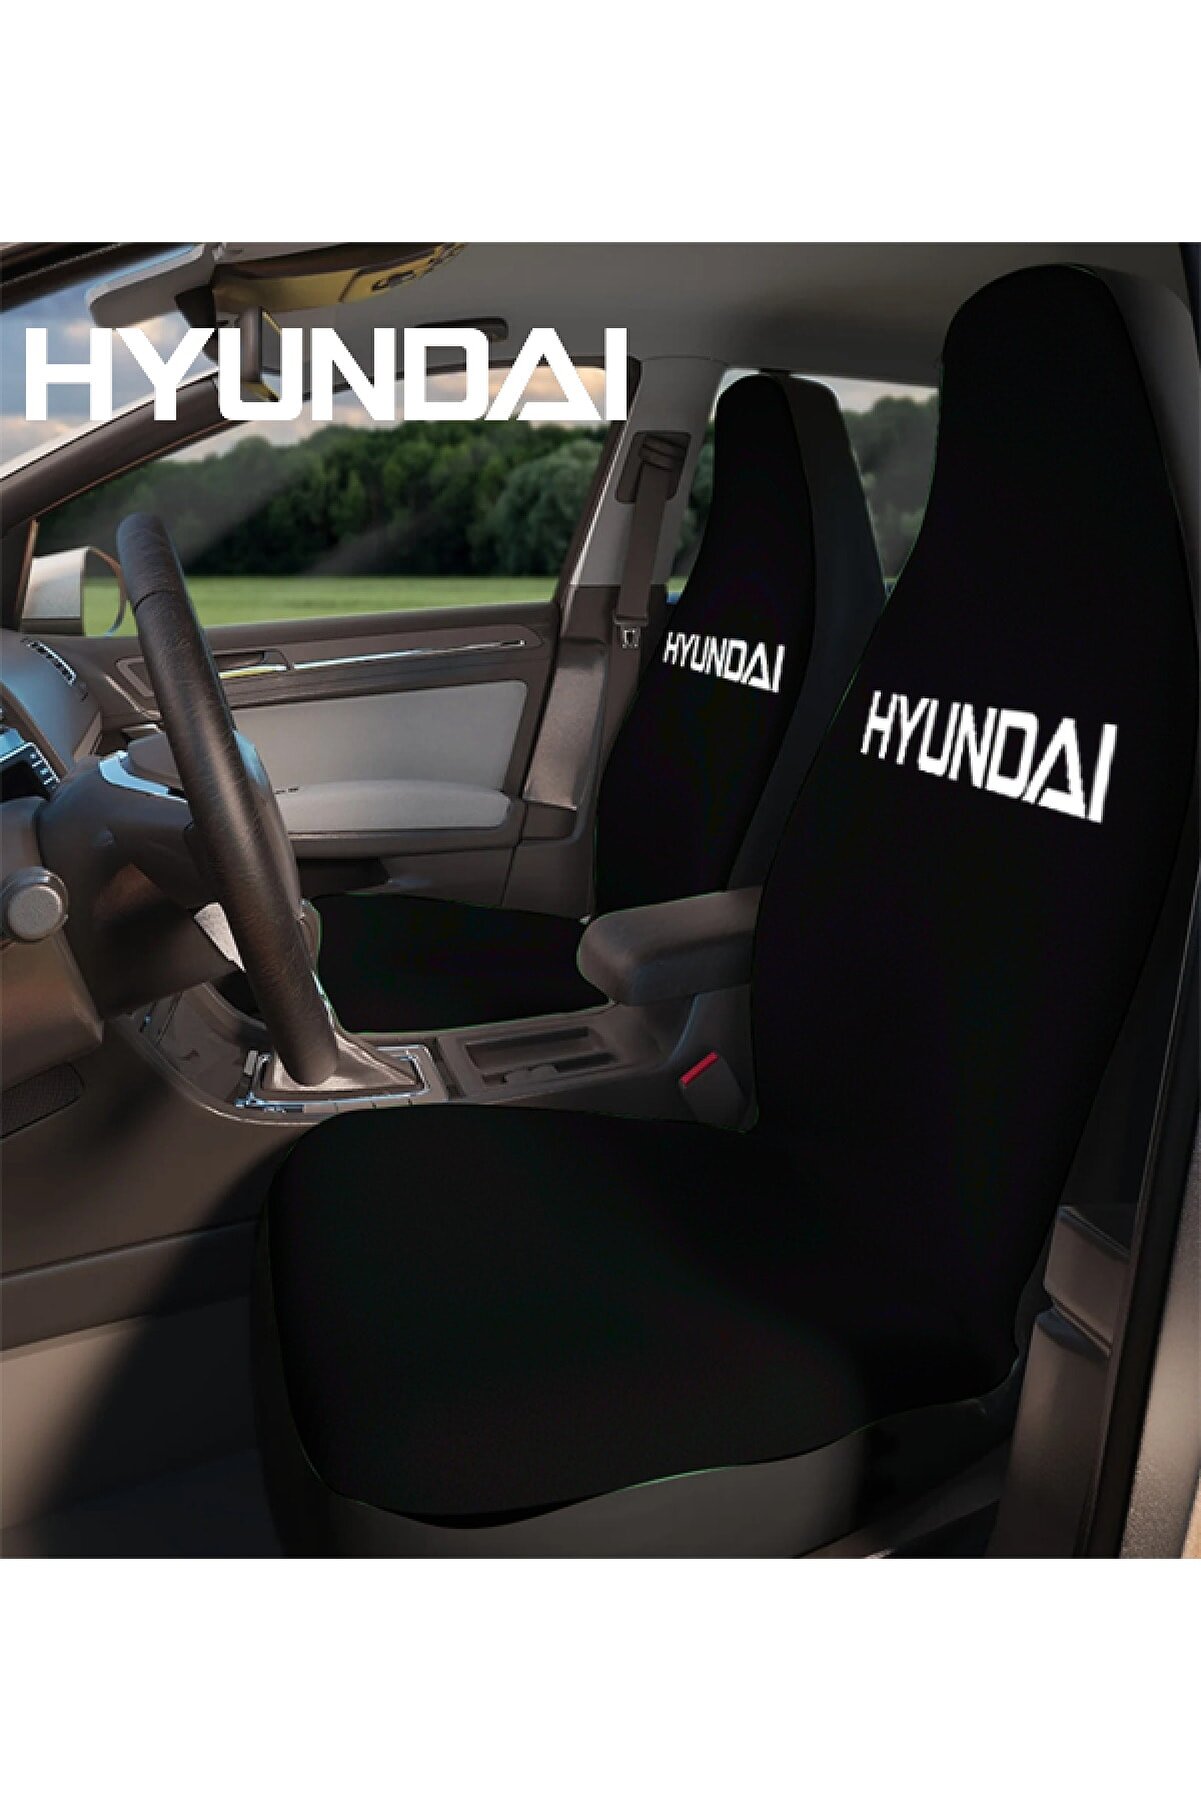 Space Oto Koltuk Kılıfı Hyundai Accent Uyumlu %100 Penye 6 Renk Araç Servis Kılıfı Terletmez,yıkanabilir